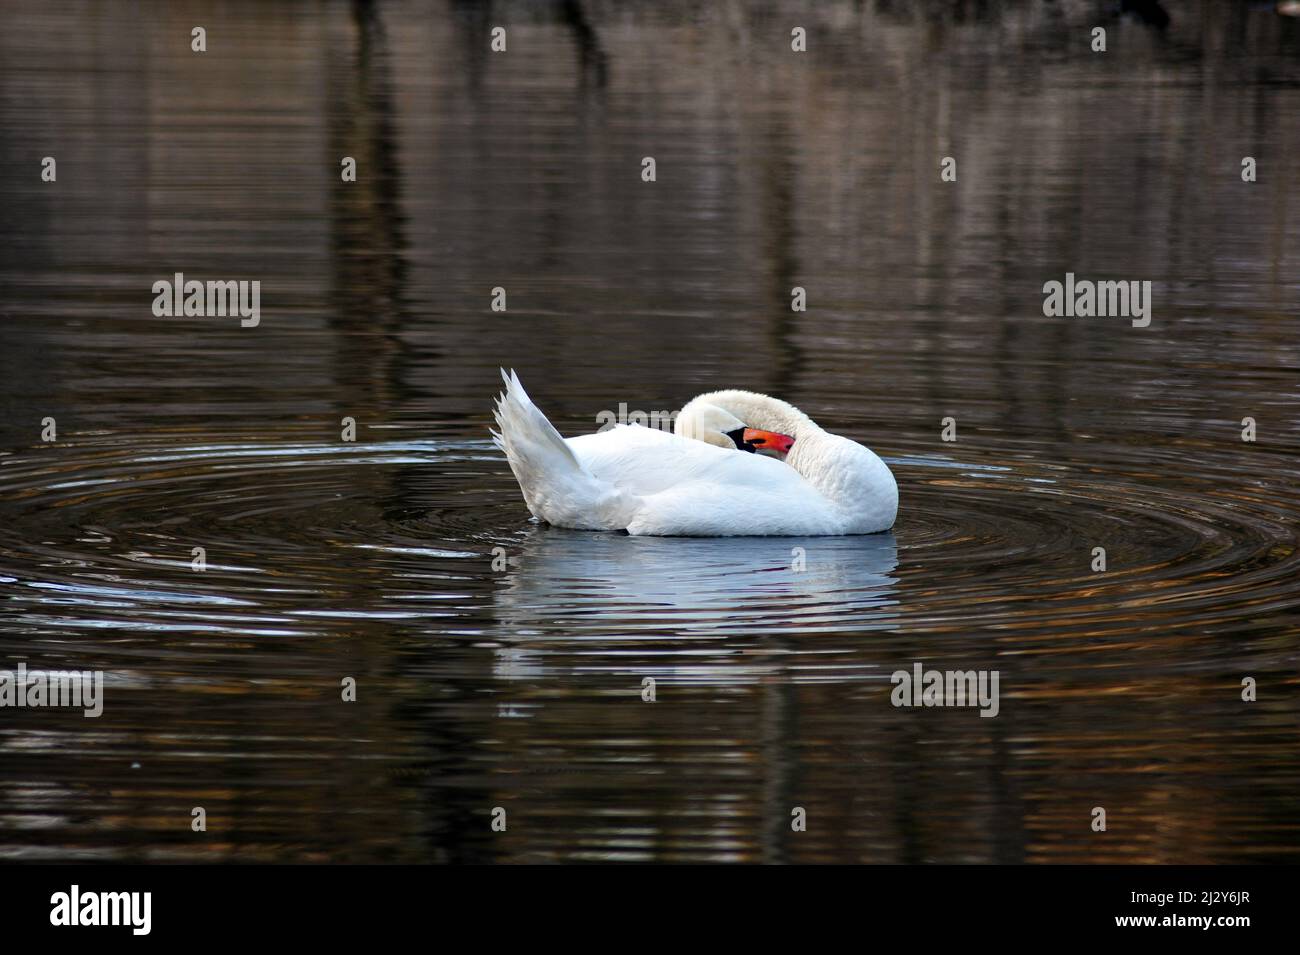 Cigno bianco nel lago scuro. Uccello spazzolando le sue piume durante la stagione di accoppiamento in primavera. Immagine orizzontale con spazio di copia. Foto Stock